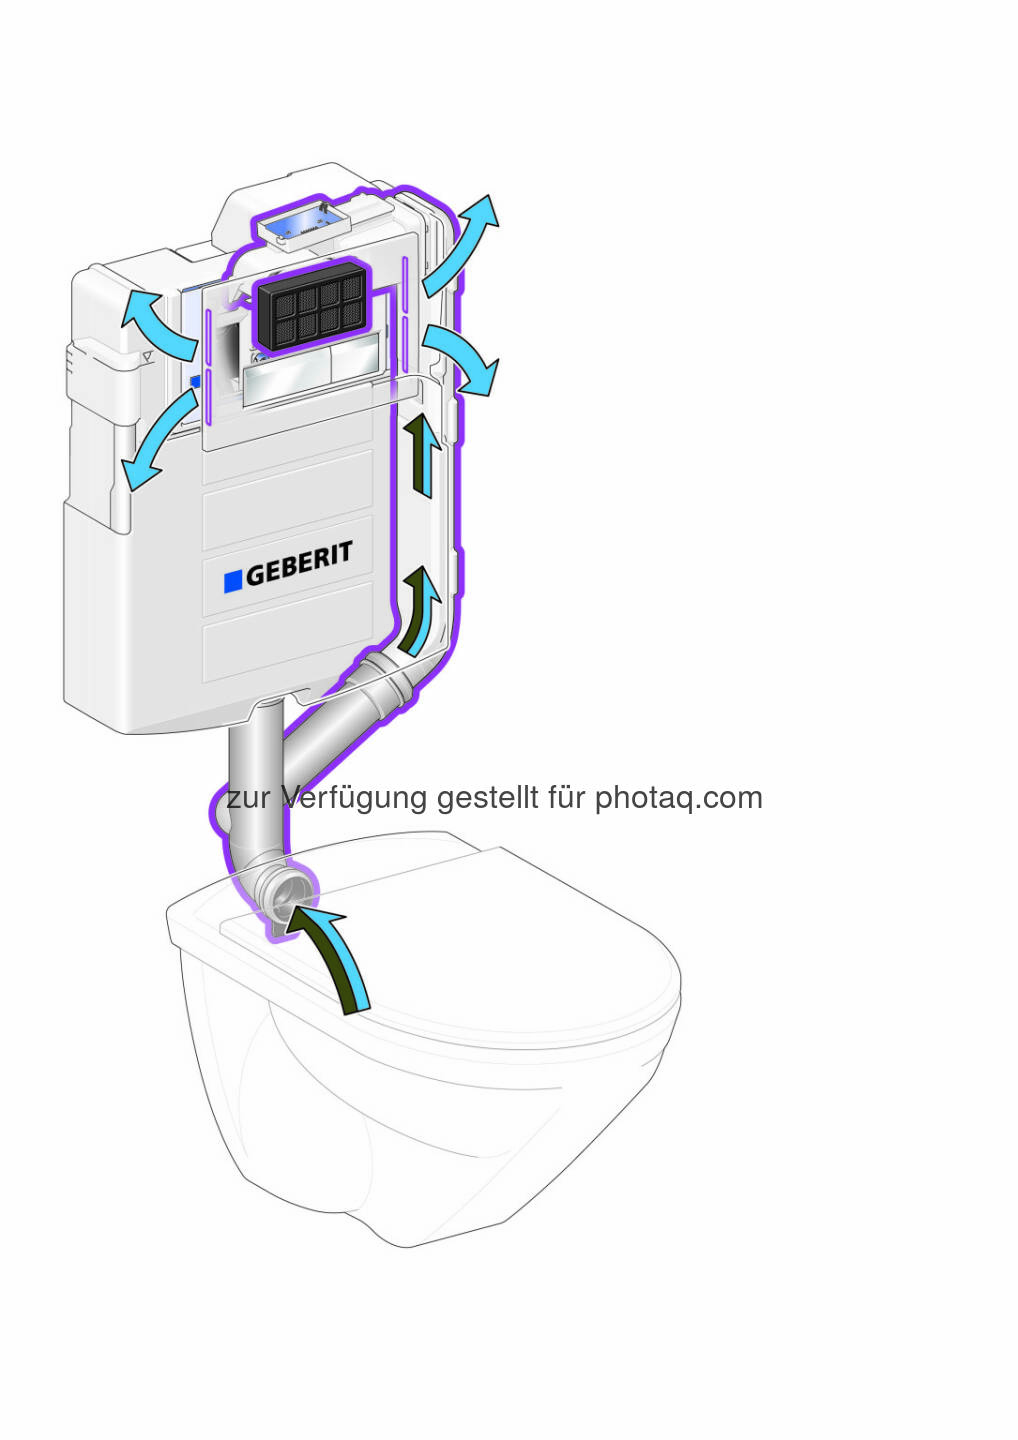 Geberit DuoFresh: Die Luft wird im eingebauten Aktivkohlefilter gereinigt und wieder zurück in den Raum geblasen. (Bild: Geberit)